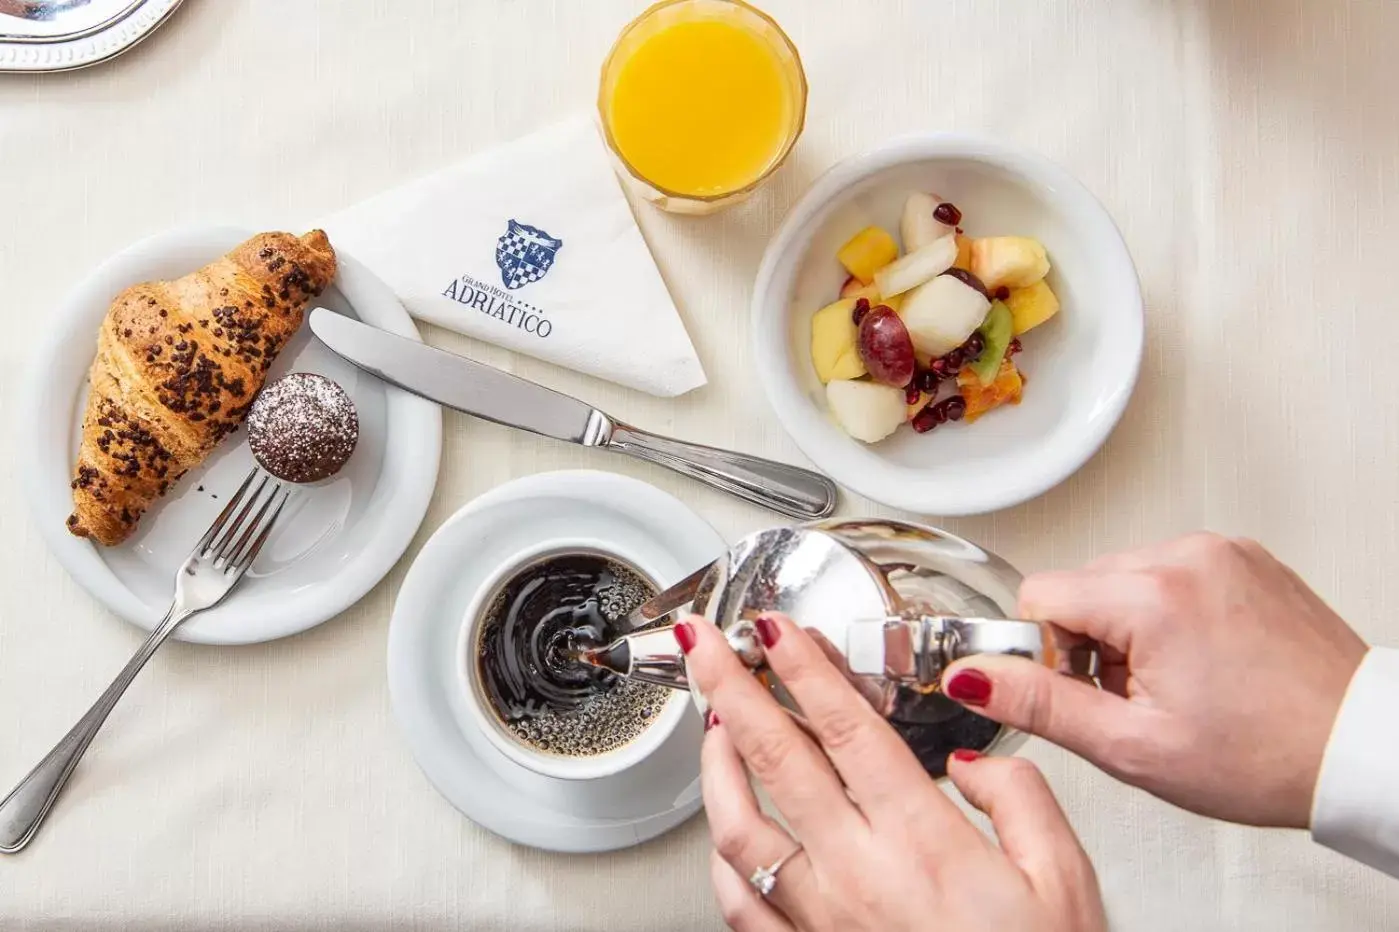 Breakfast in Grand Hotel Adriatico